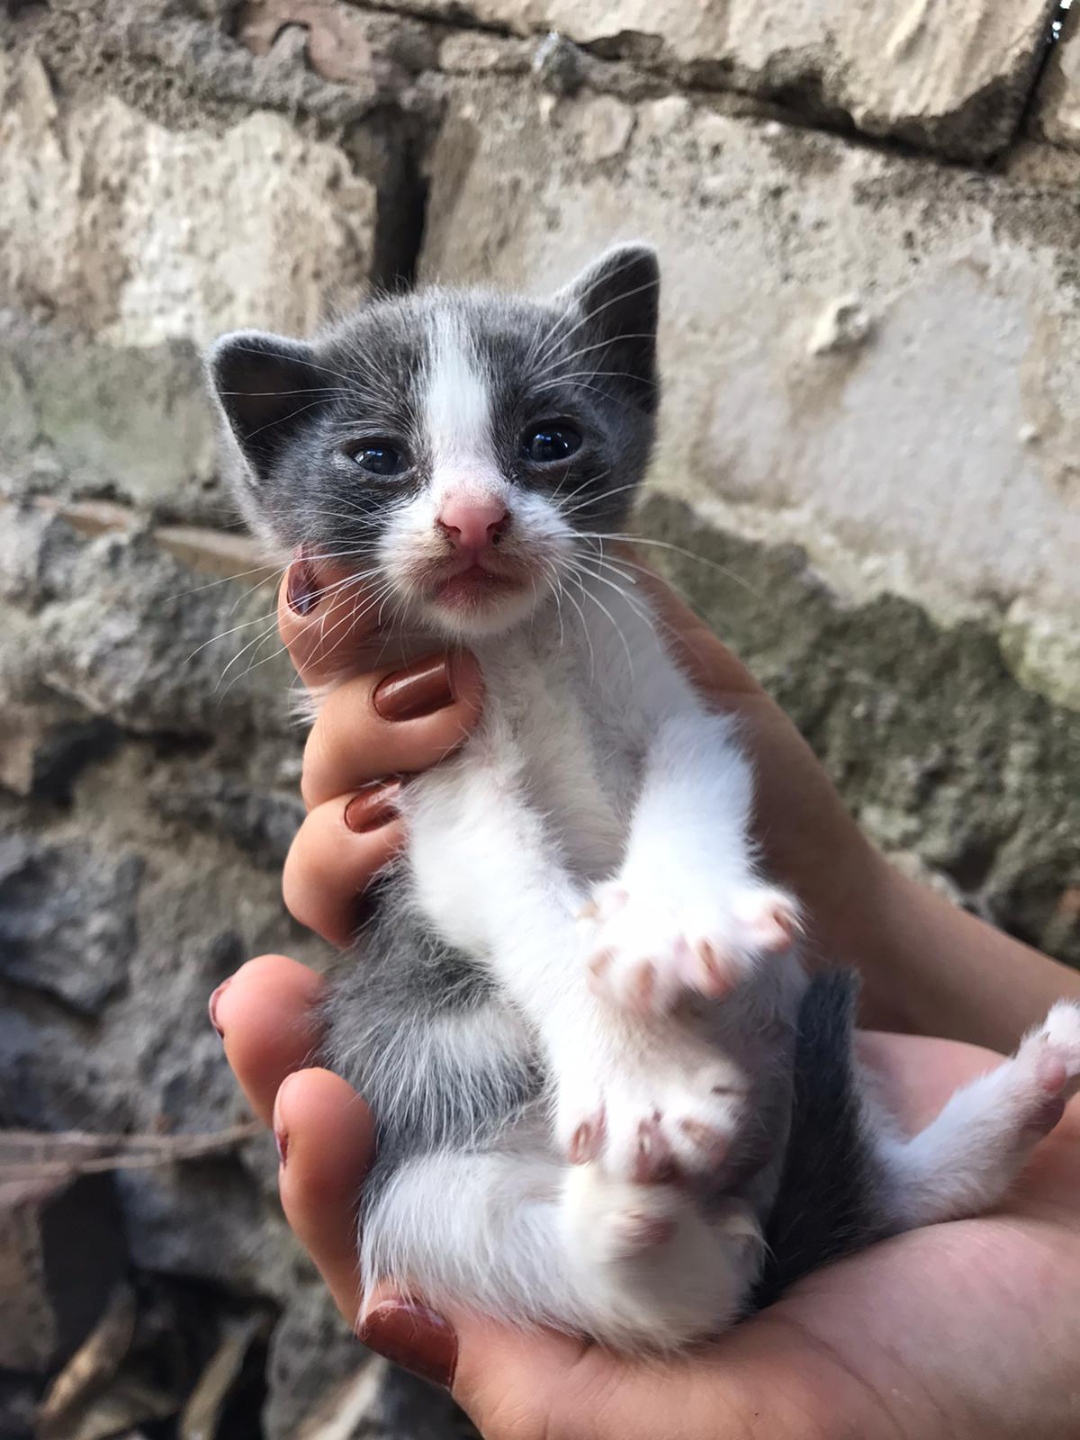 minik bebekler yuv, Ücretsiz Kedi, İzmir